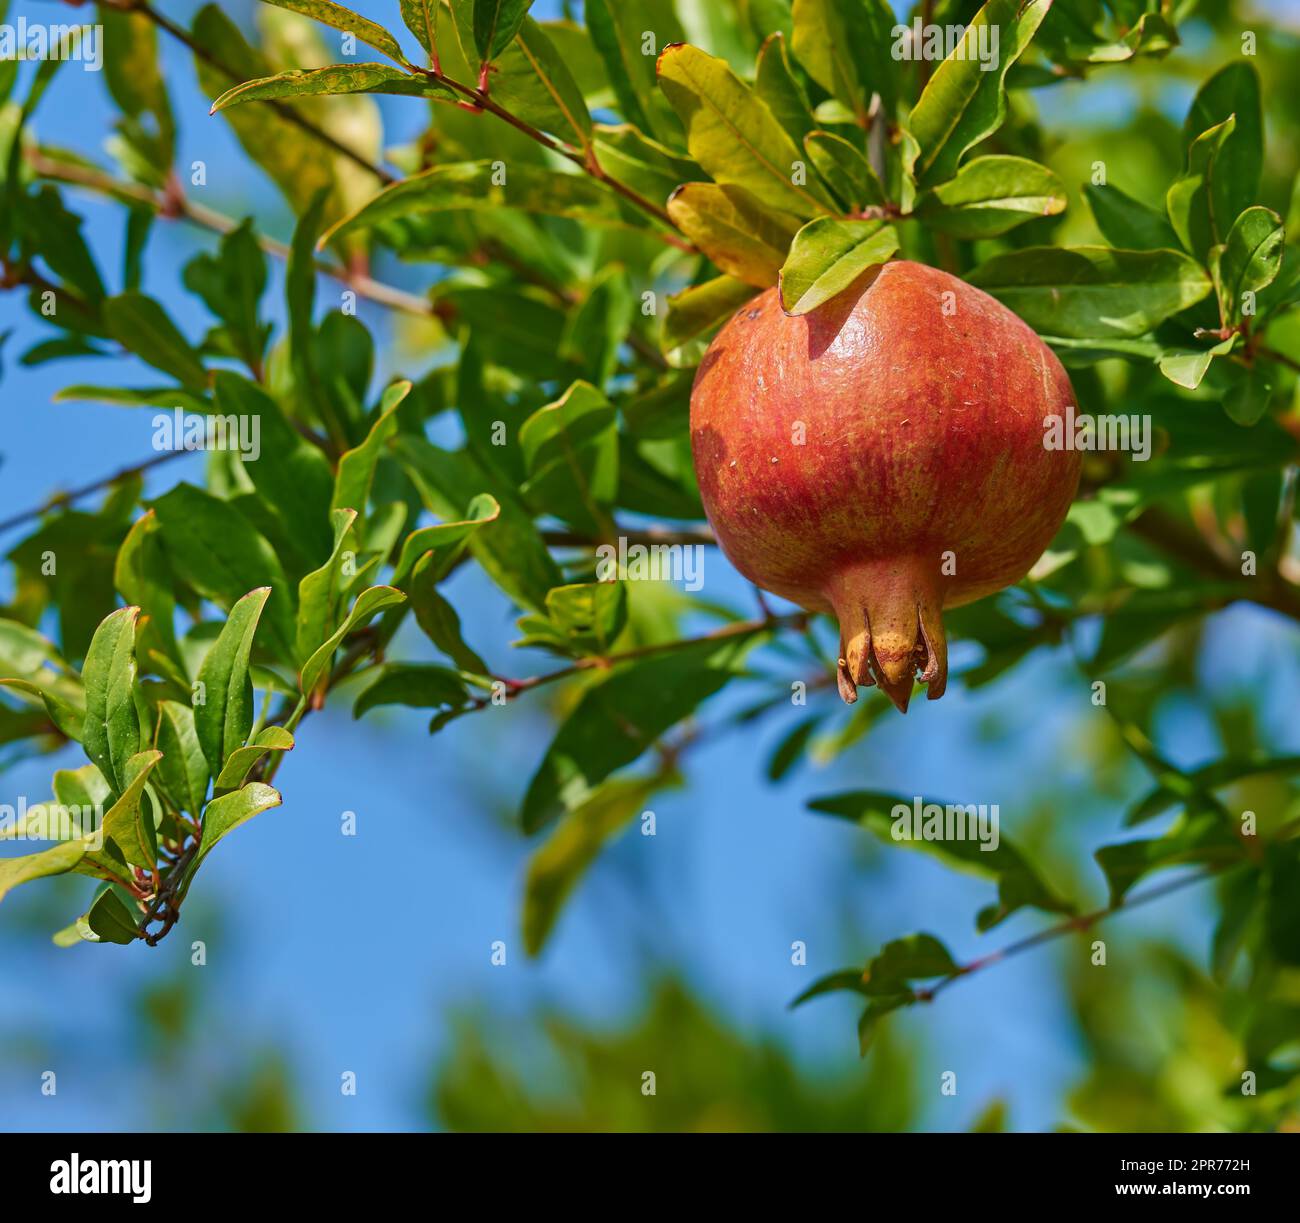 Nahaufnahme eines reifen Granatäpfels, der im Garten an einem Ast hängt. Köstliches rotes Granat, Obst, das gepflückt werden kann. Frische Ernte, die auf einem gesunden Bauernbaum vor dem Hintergrund eines verschwommenen Himmels angebaut wird Stockfoto